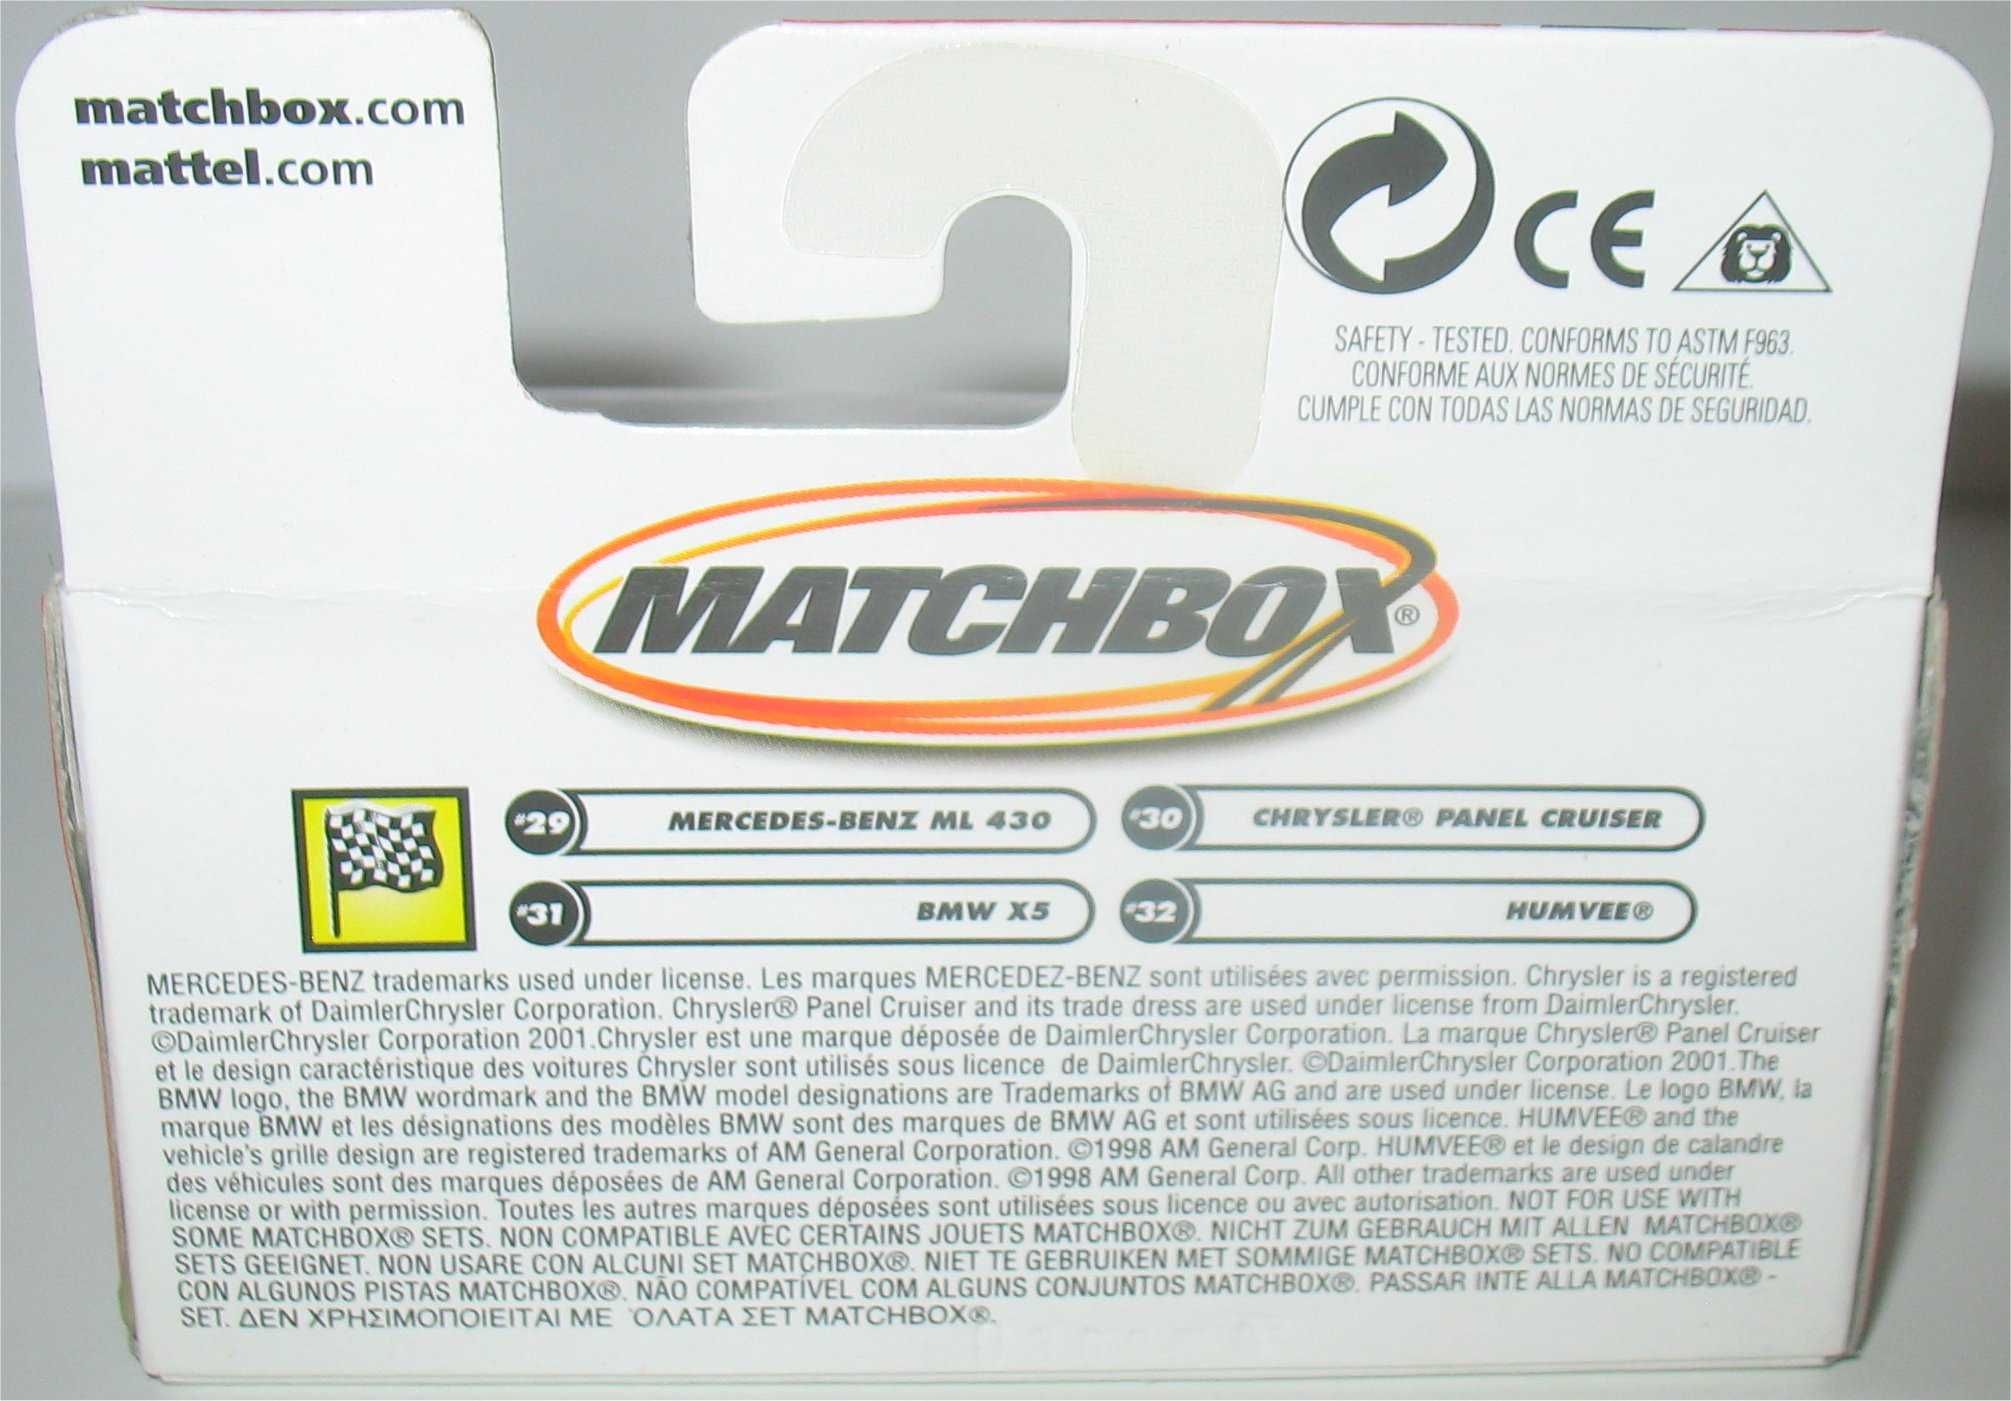 Matchbox - Mercedes-Benz ML 430 (50 Anos - 2002)